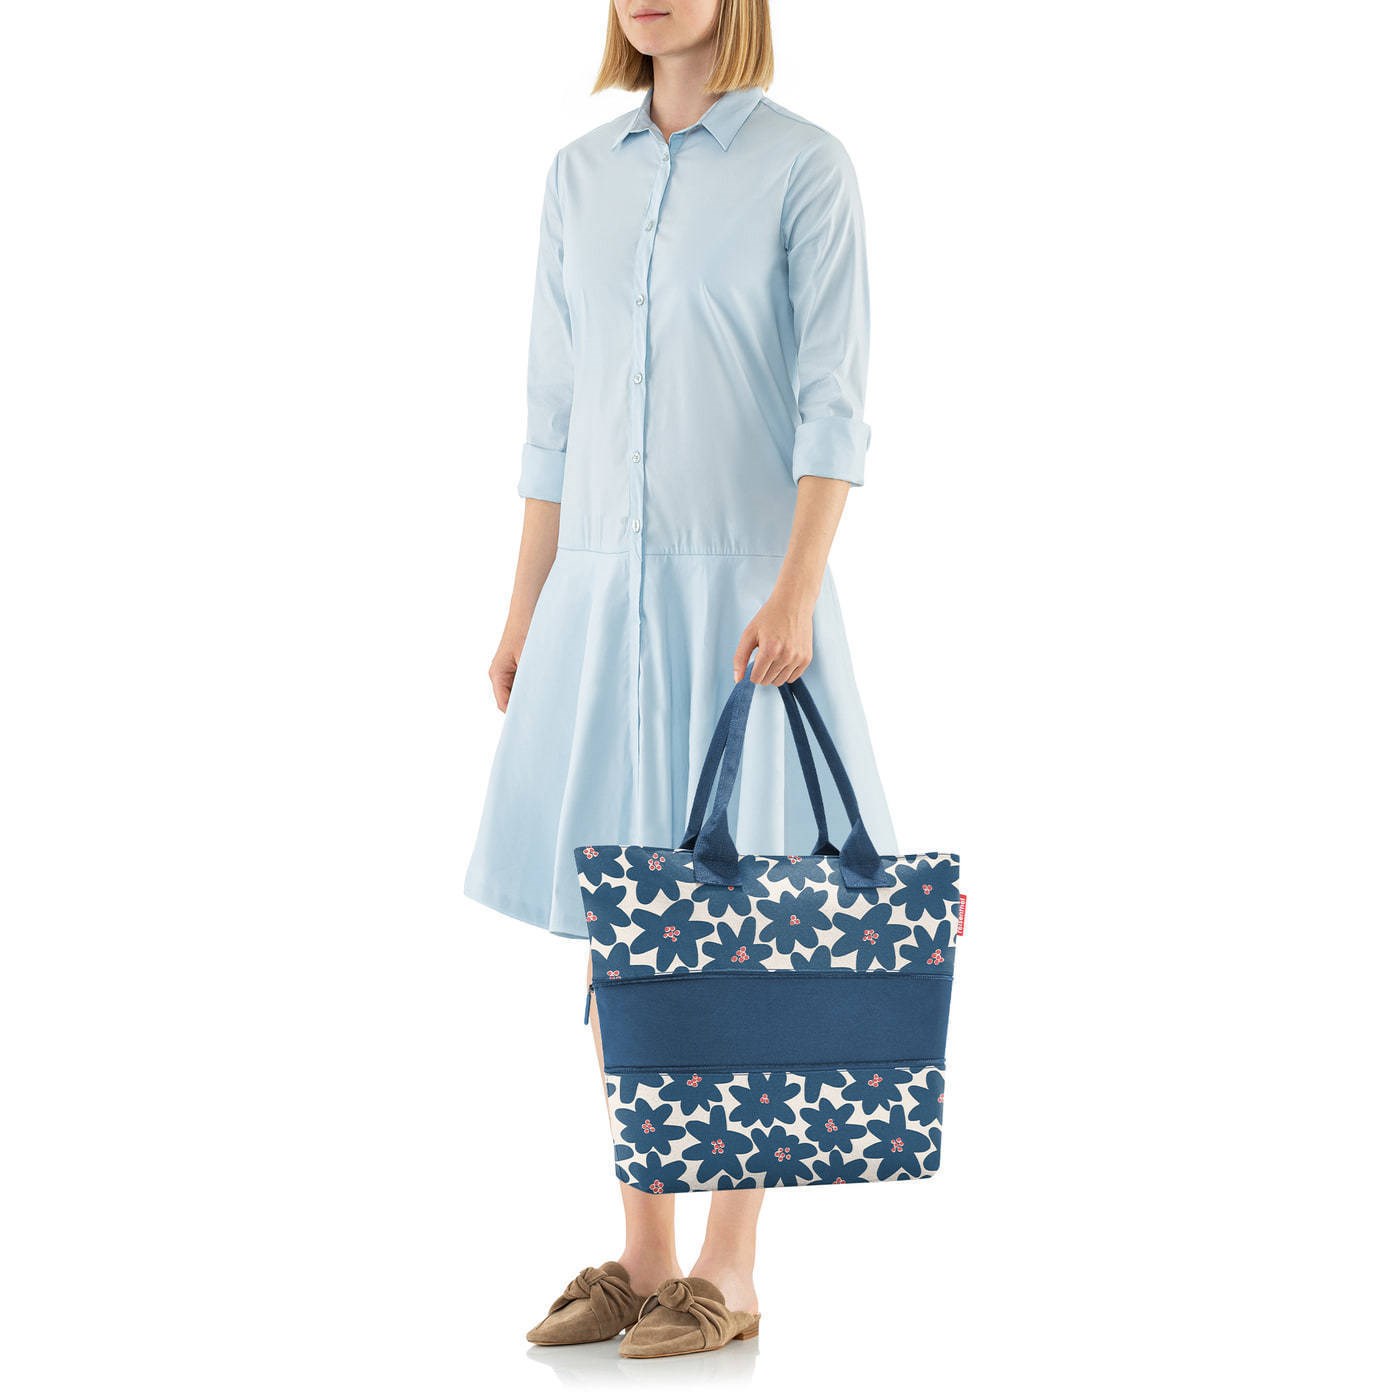 Chytrá taška přes rameno Shopper e1 daisy blue_3